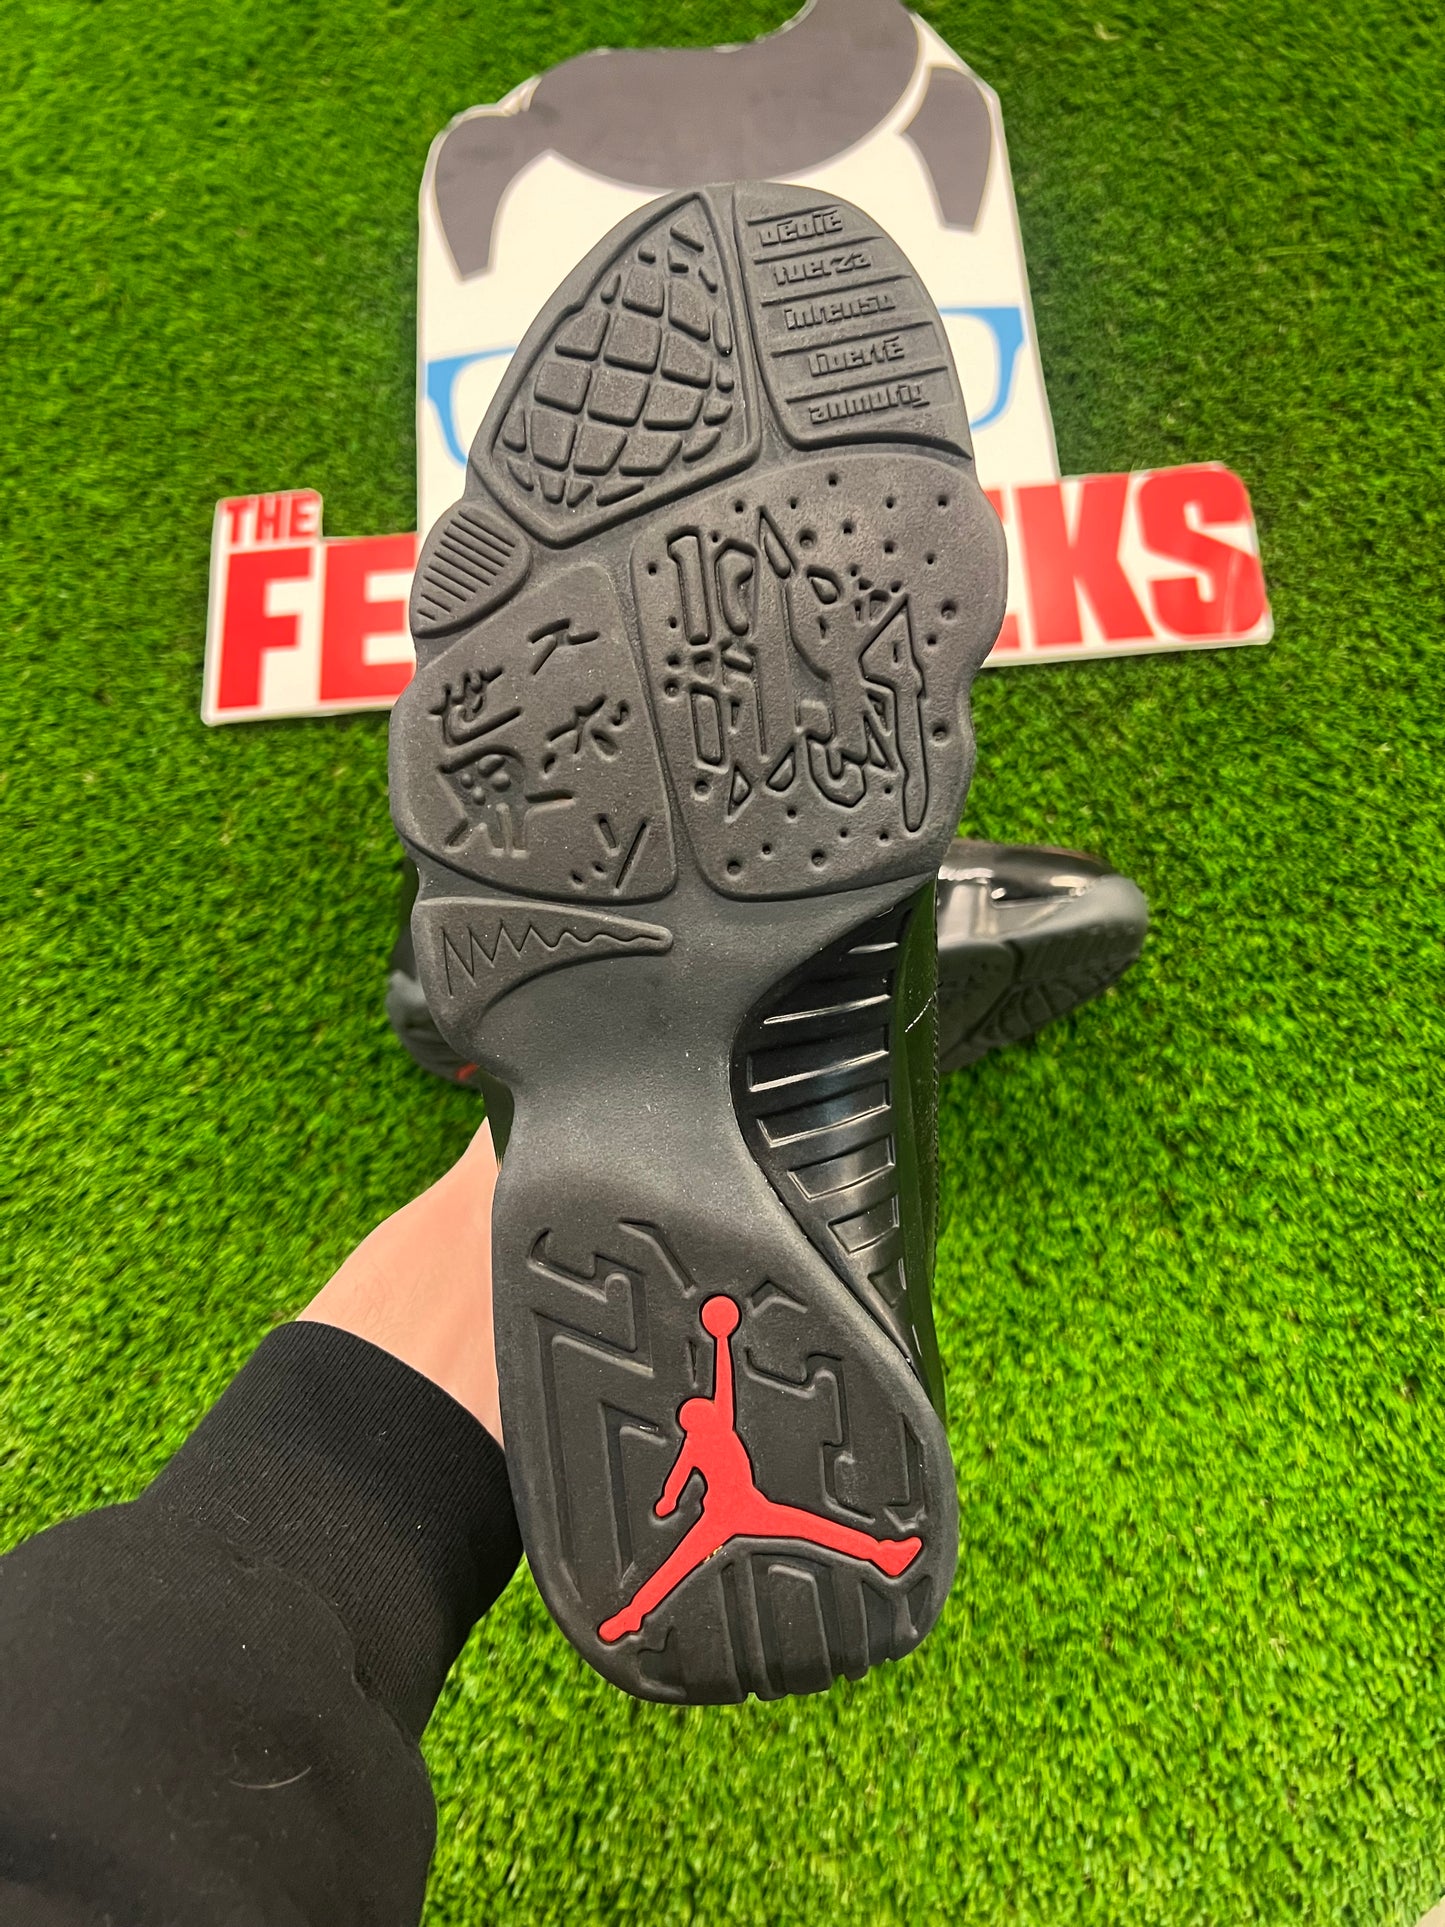 Men’s Air Jordan 9 Bred Shoes Brand New